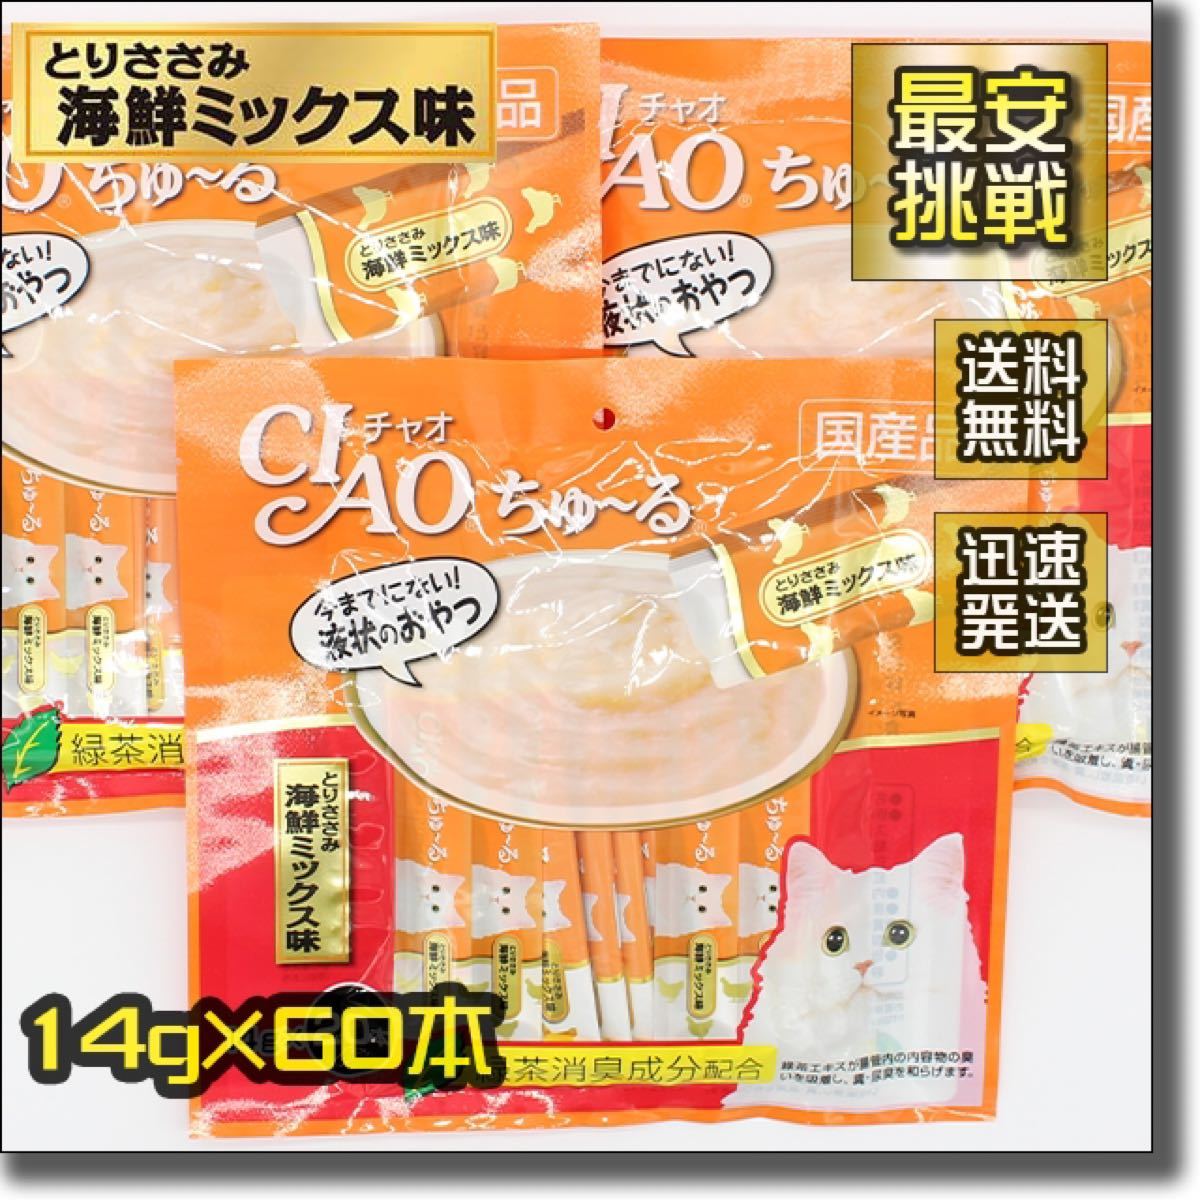 ちゅ~る ちゅーる 14g×60本 とりささみ 海鮮ミックス味 チャオ CIAO 猫用 おやつ チュール 鶏ササミ 鳥 ねこ